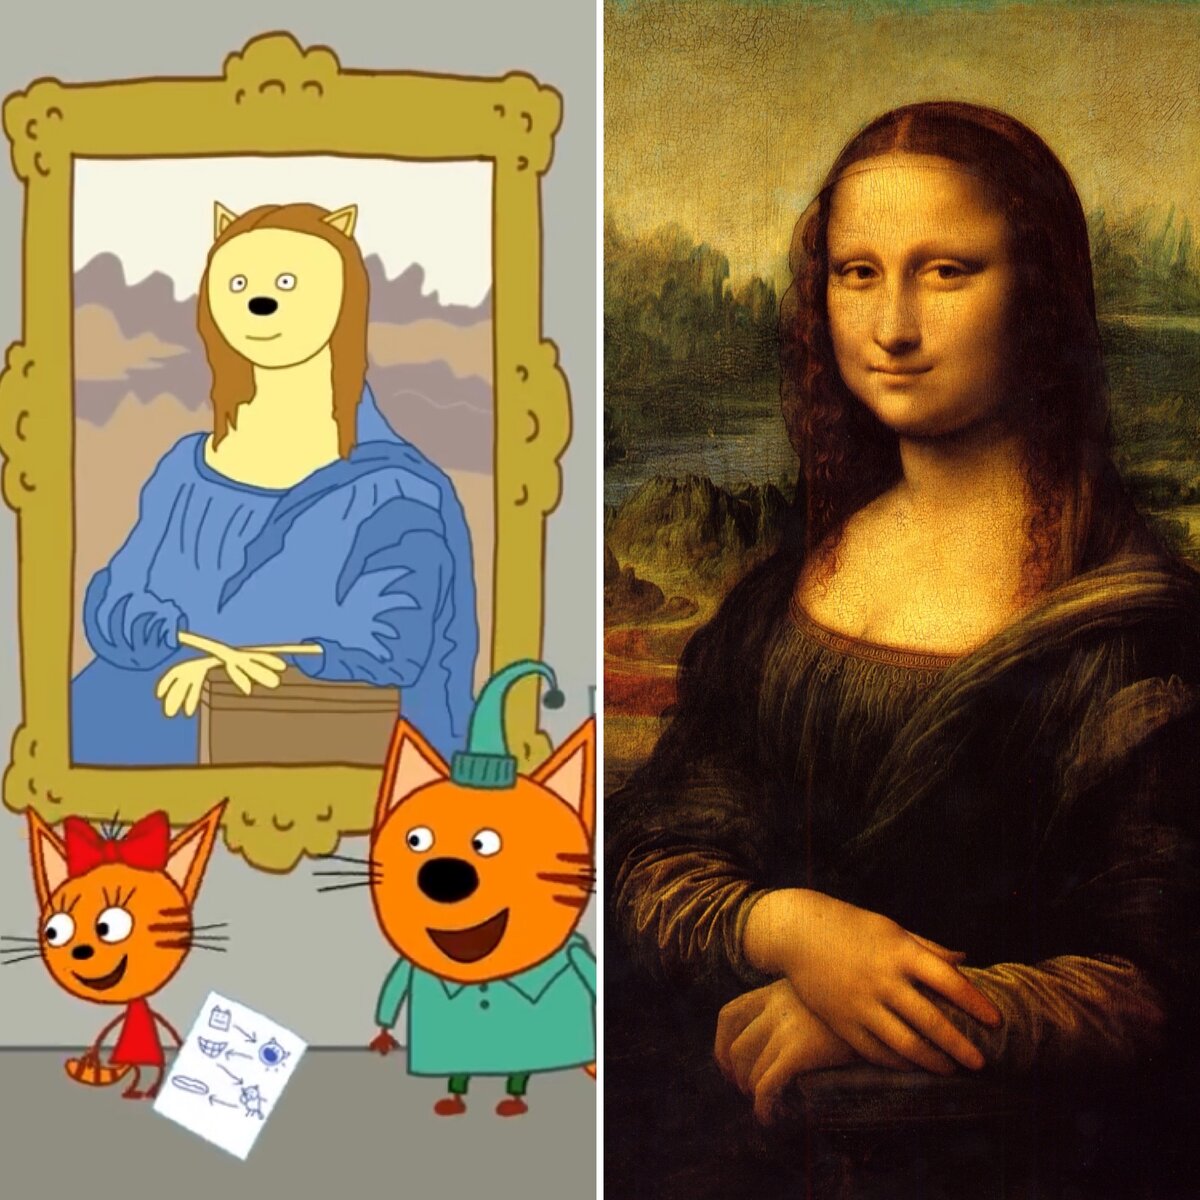 "Кошечка с улыбкой", как ее назвала Карамелька слева и "Мона Лиза" (1503-1519) Леонардо да Винчи справа.